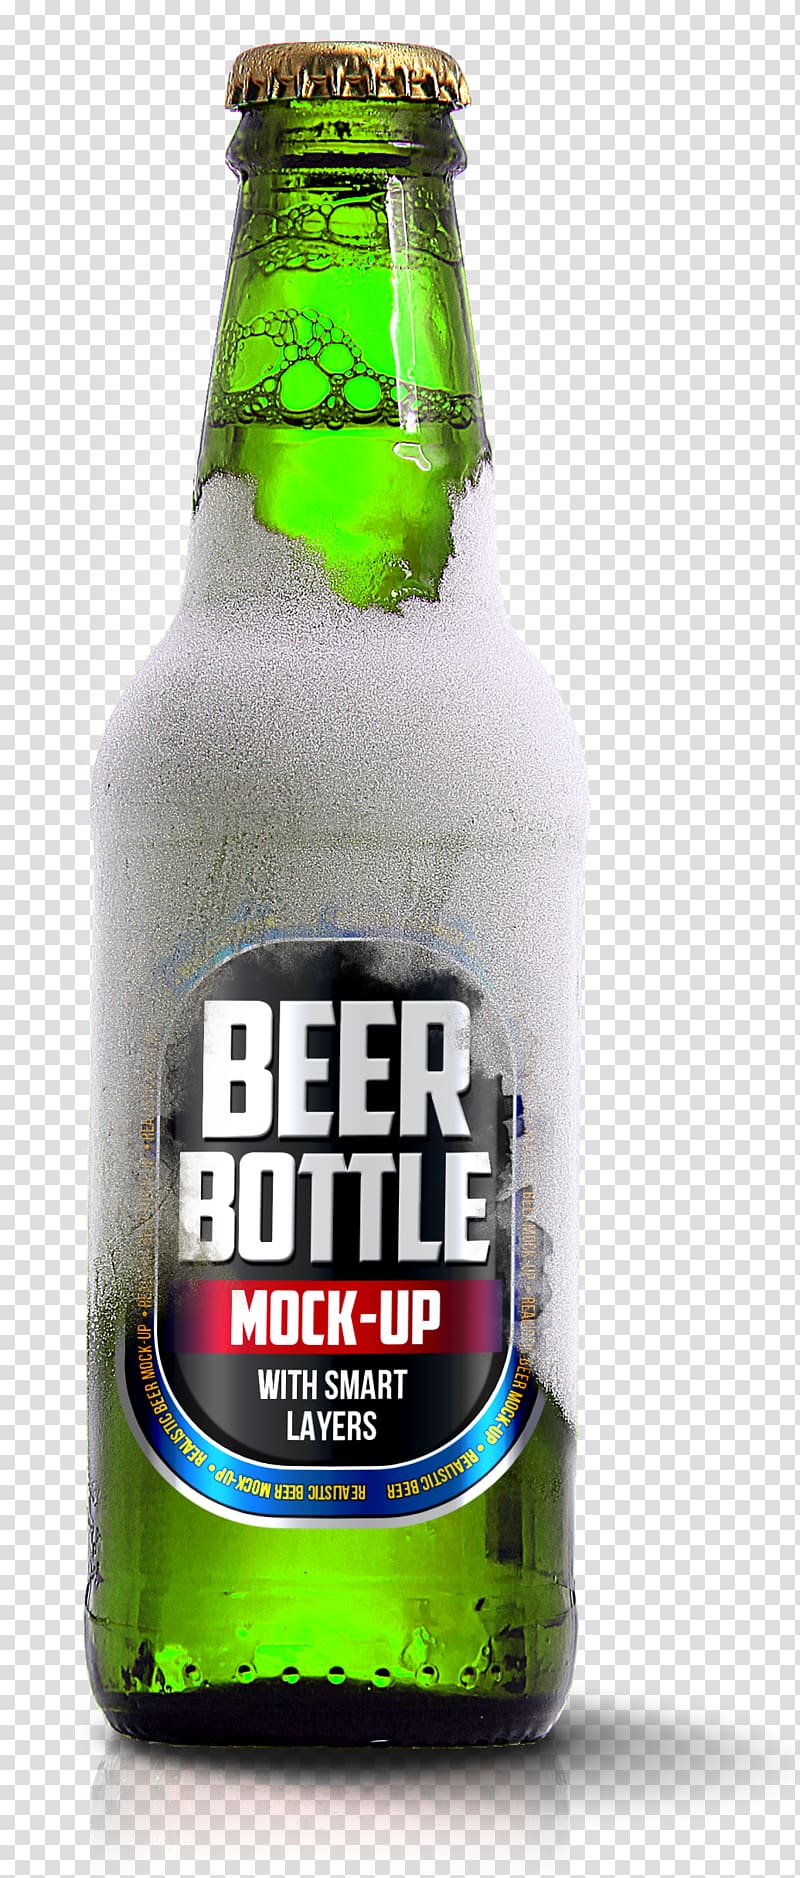 Beer Bottle glass bottle, Lager Beer Bottle Packaging and labeling, Green beer bottle transparent background PNG clipart